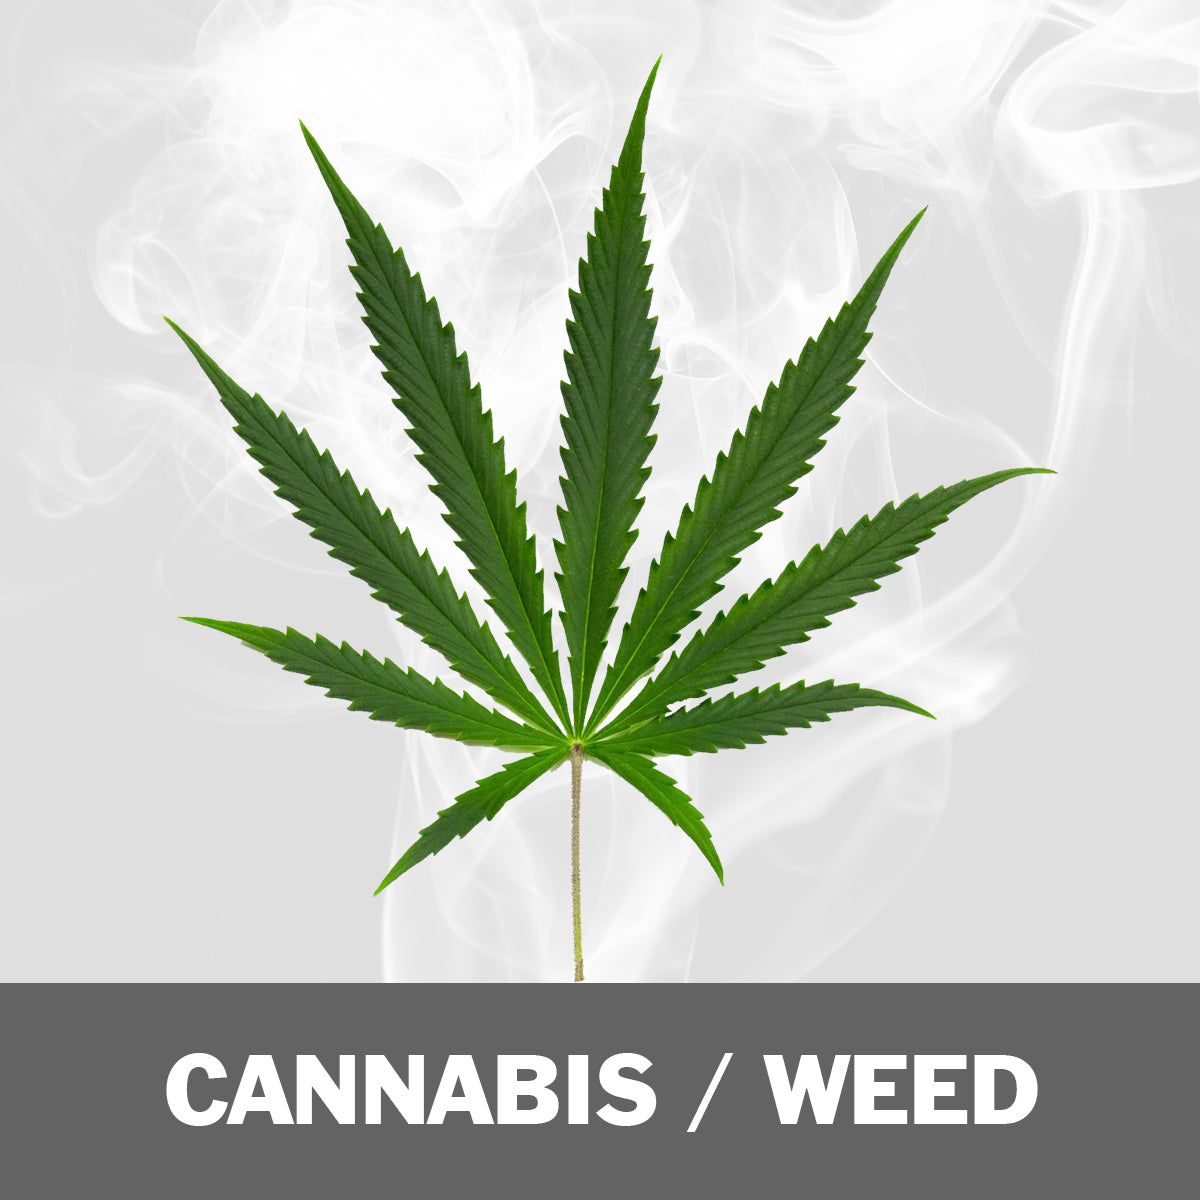 Cannabis / Weed